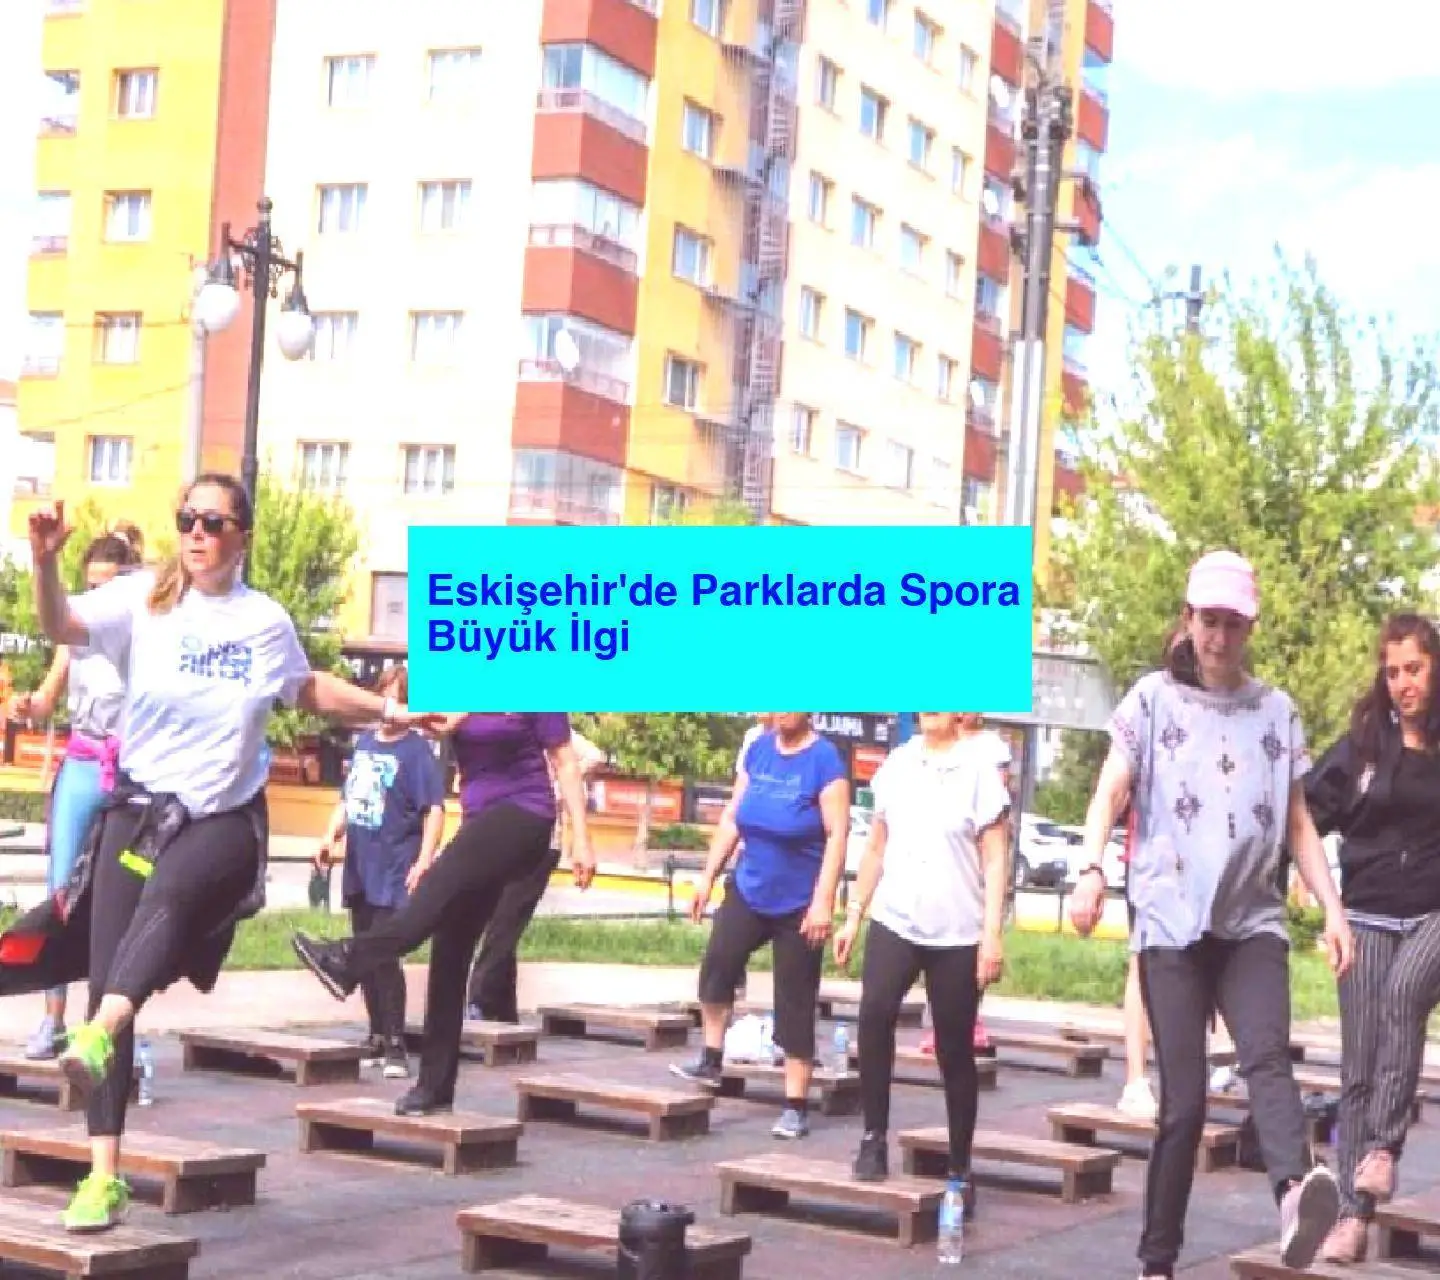 Eskişehir’de Parklarda Spora Büyük İlgi